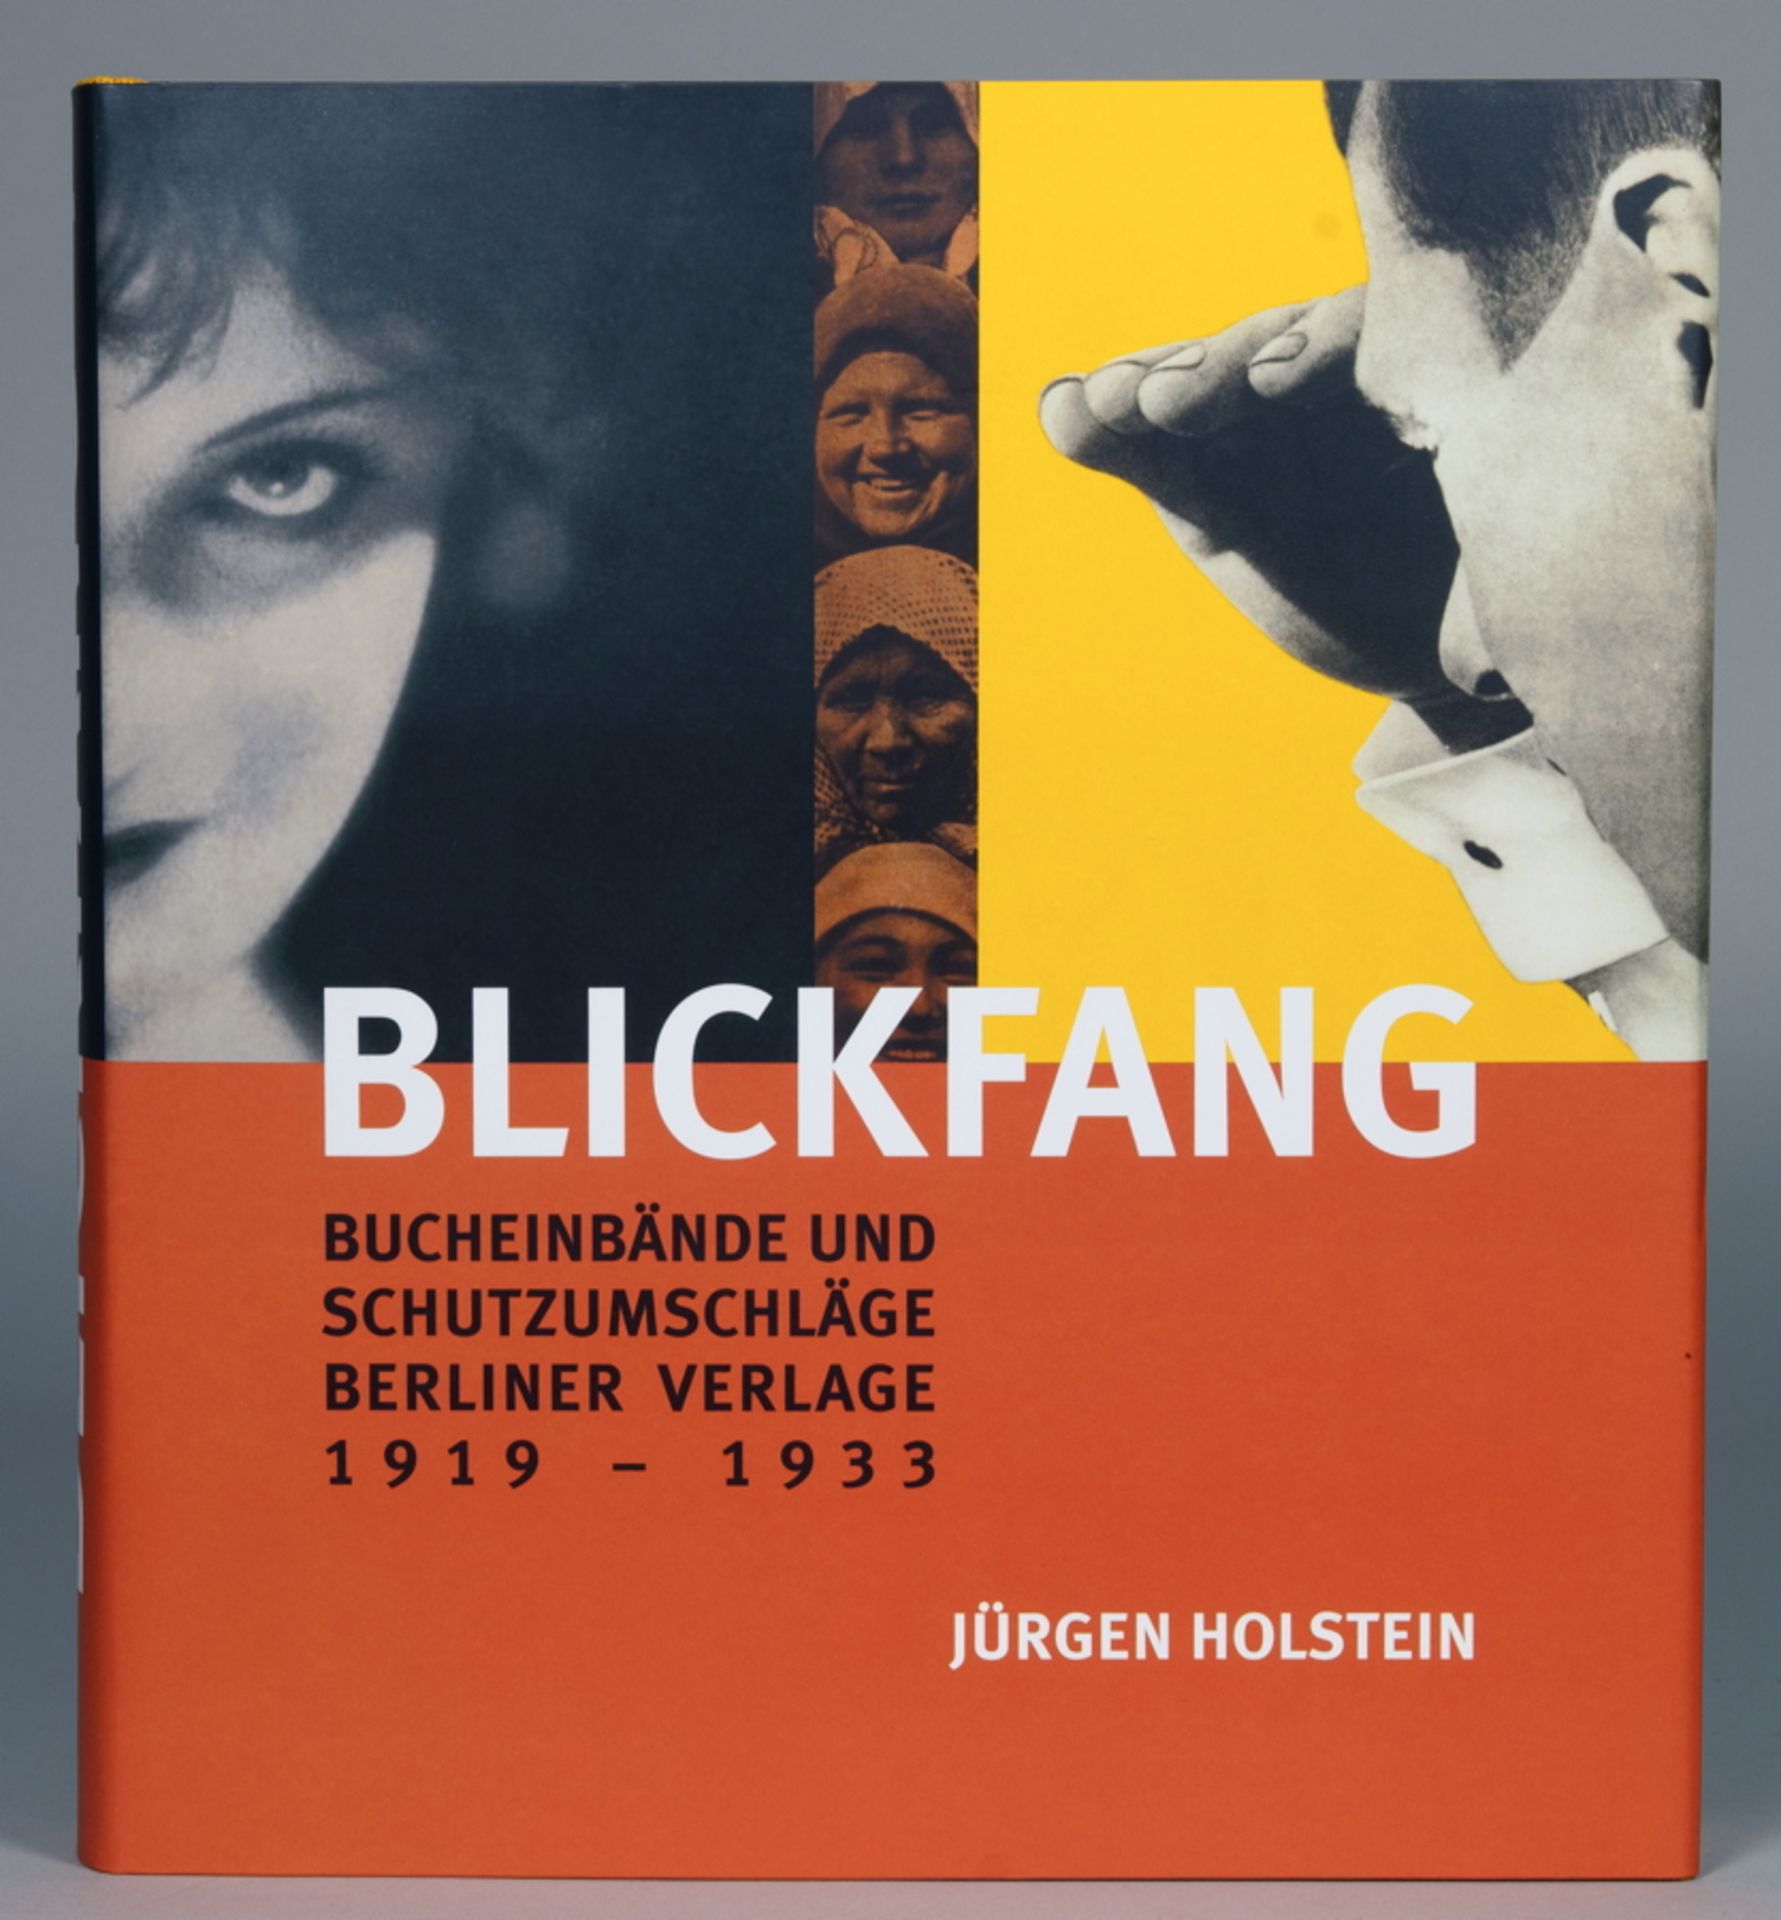 Jürgen Holstein. Blickfang. Bucheinbände und Schutzumschläge Berliner Verlage 1919–1933. 1000